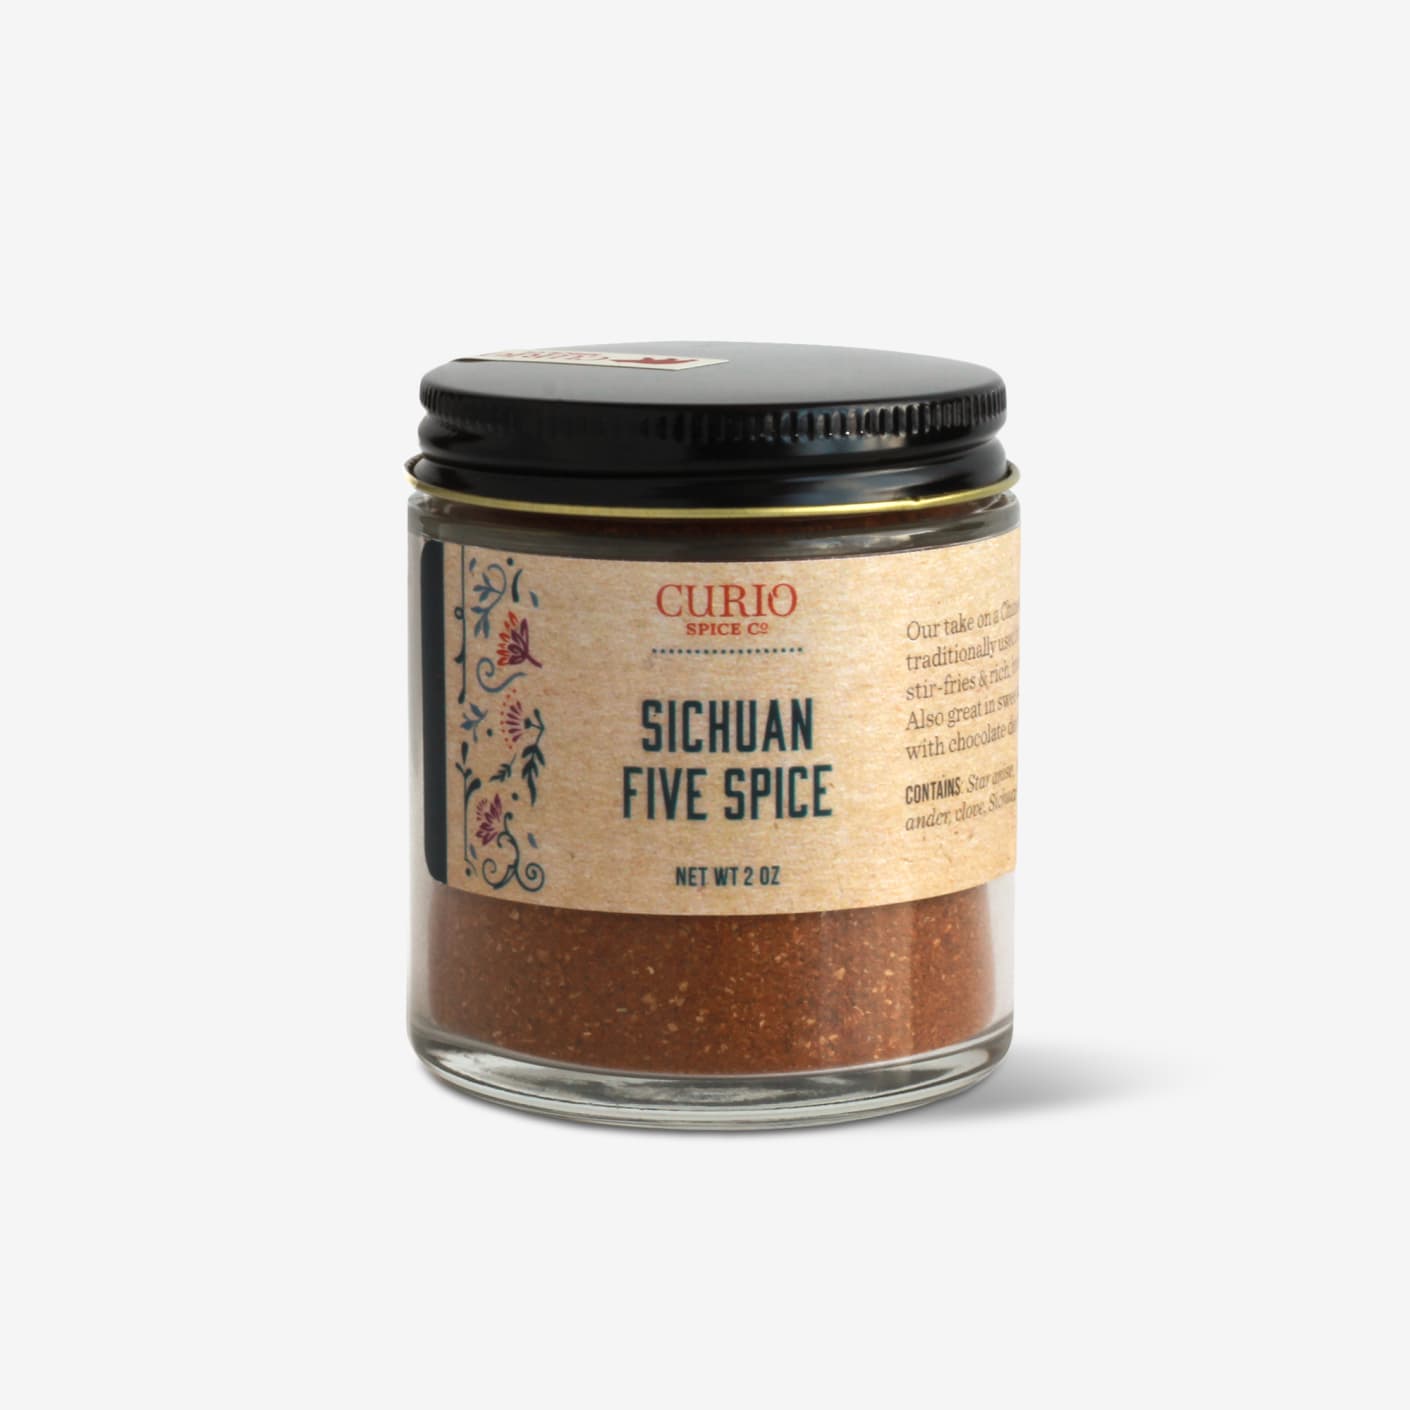 Curio Spice Co Sichuan Five Spice